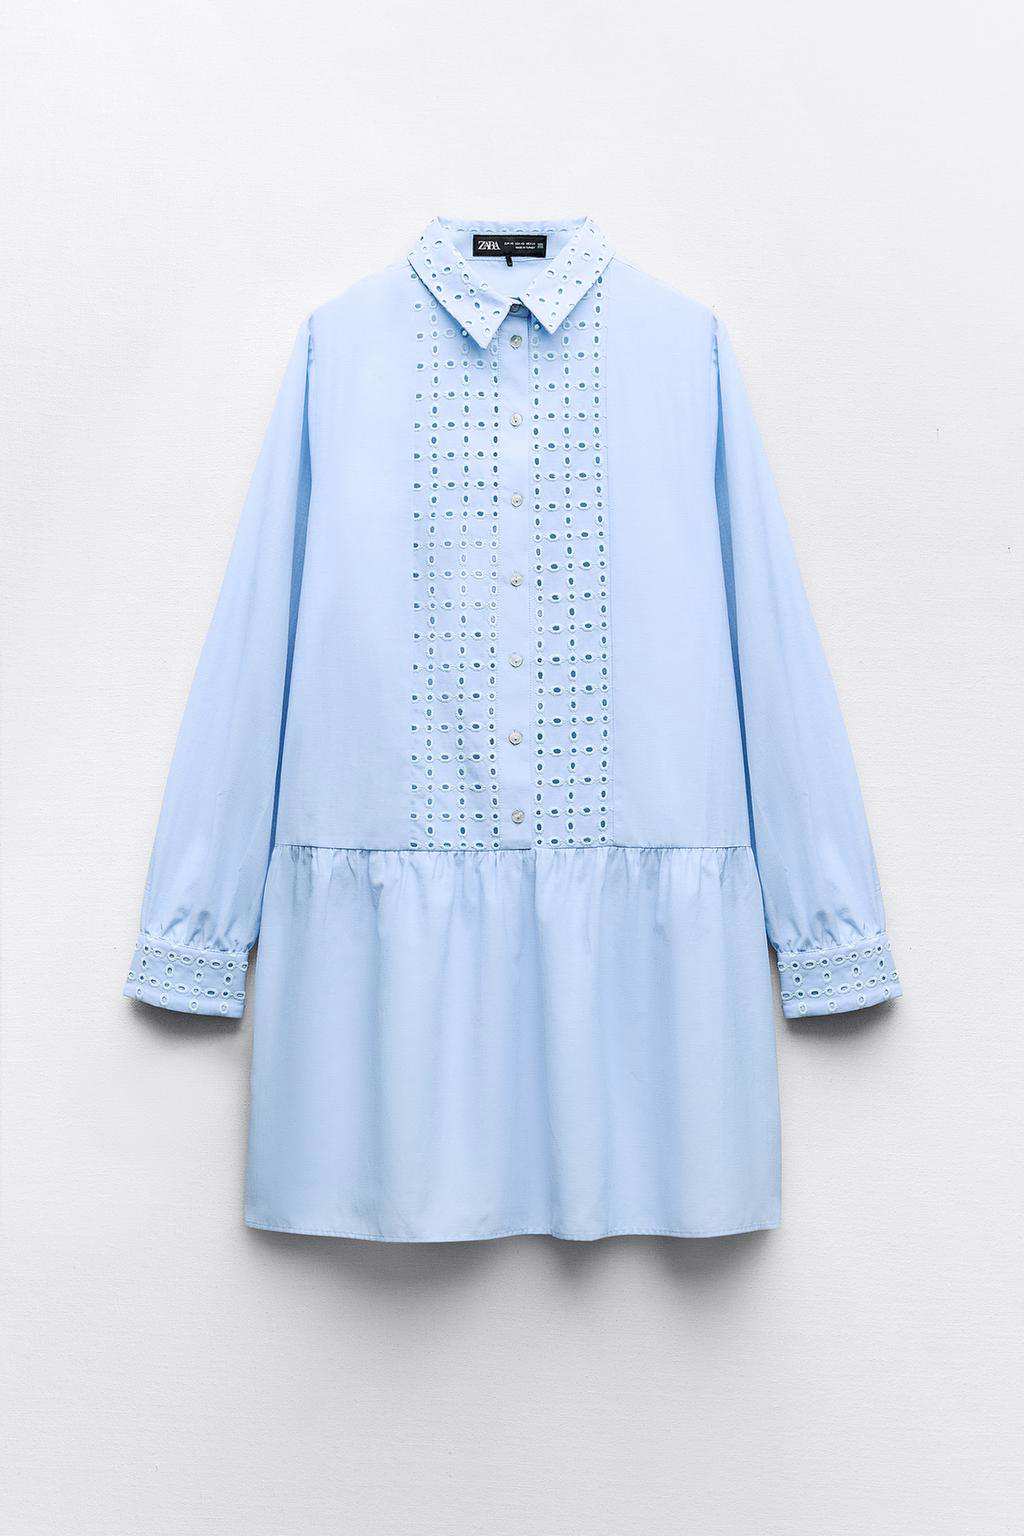 Vestido mini bordados perforados de Zara 29,95 euros